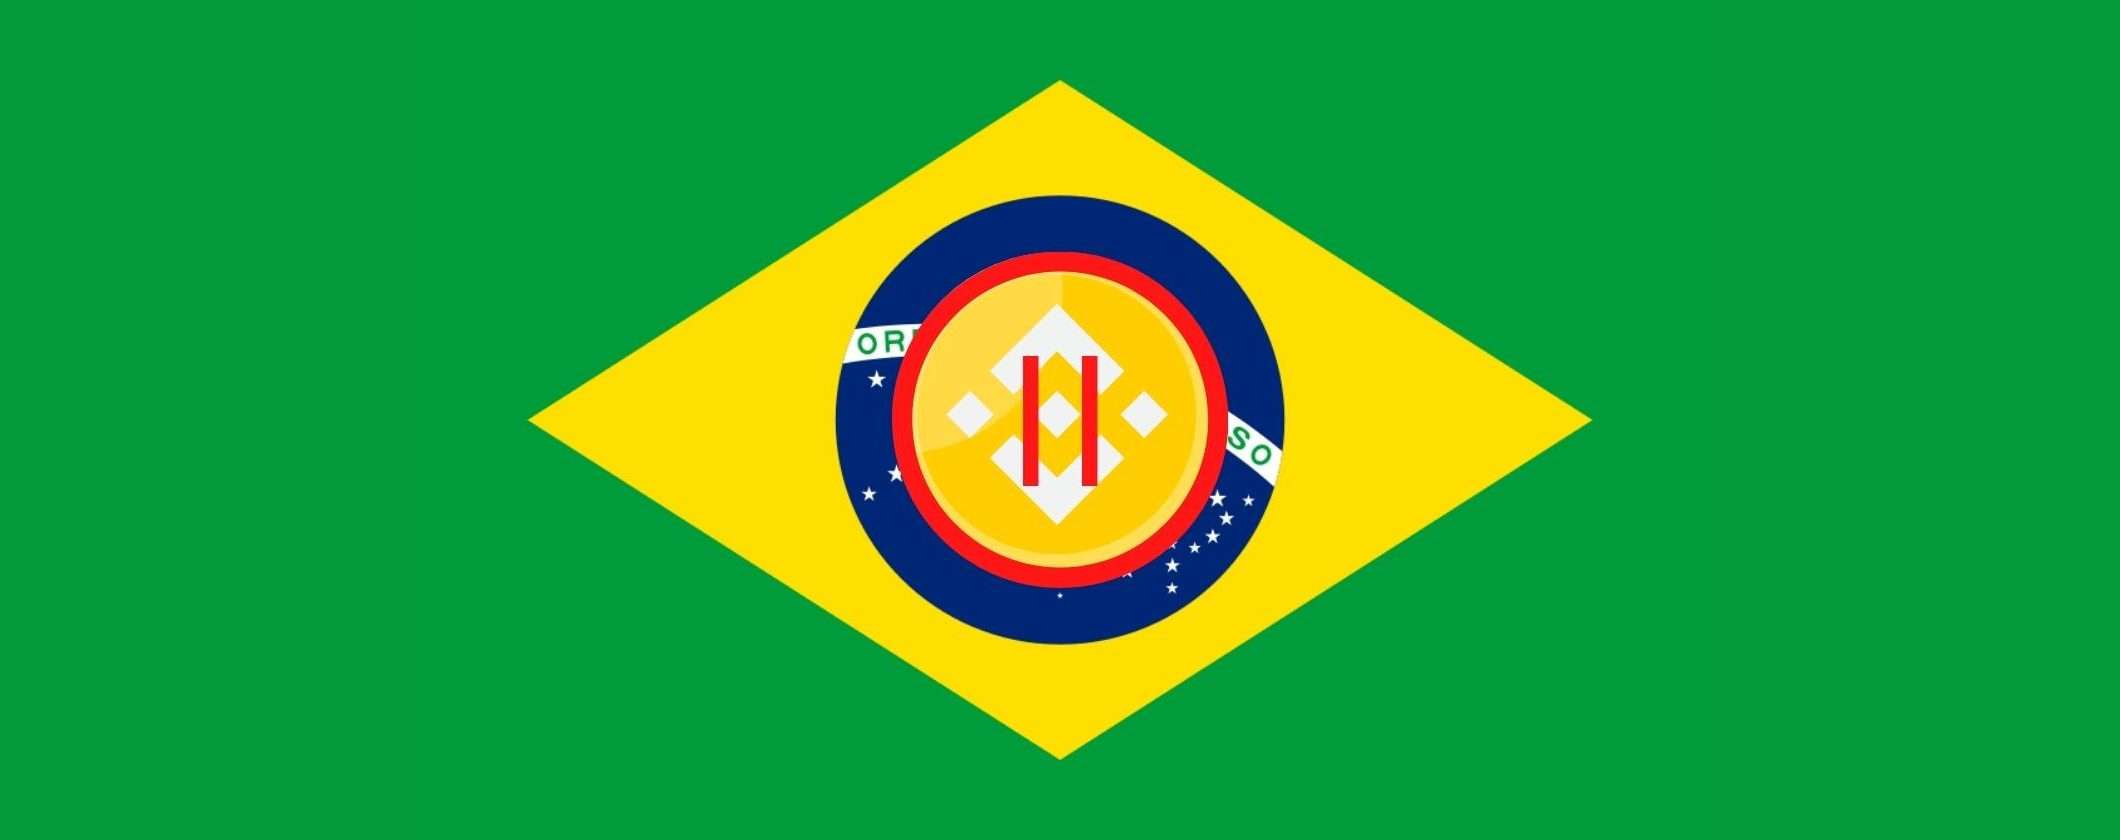 Binance sospende i prelievi in Brasile